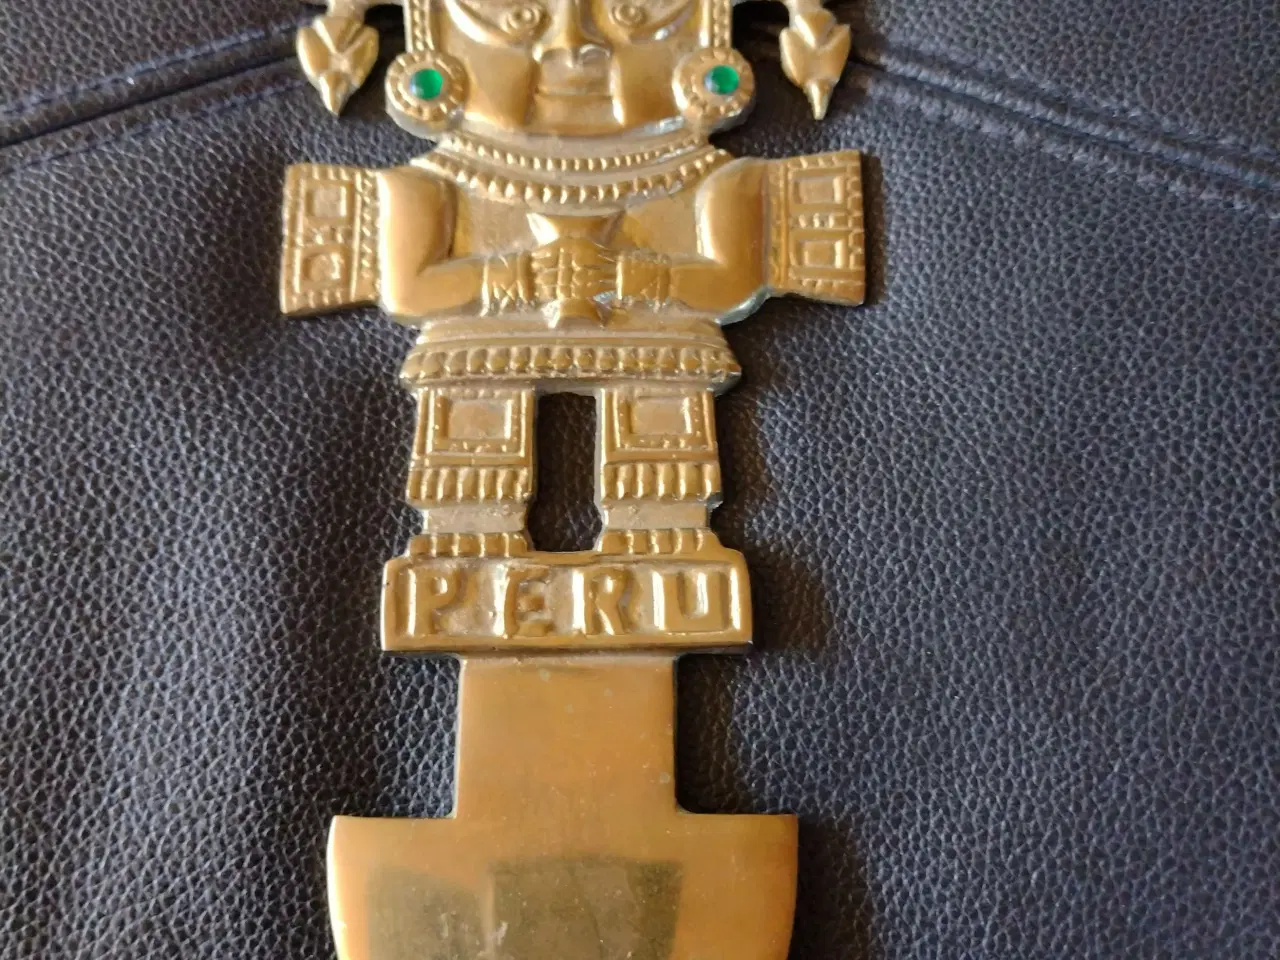 Billede 1 - Souvenirs fra Peru 